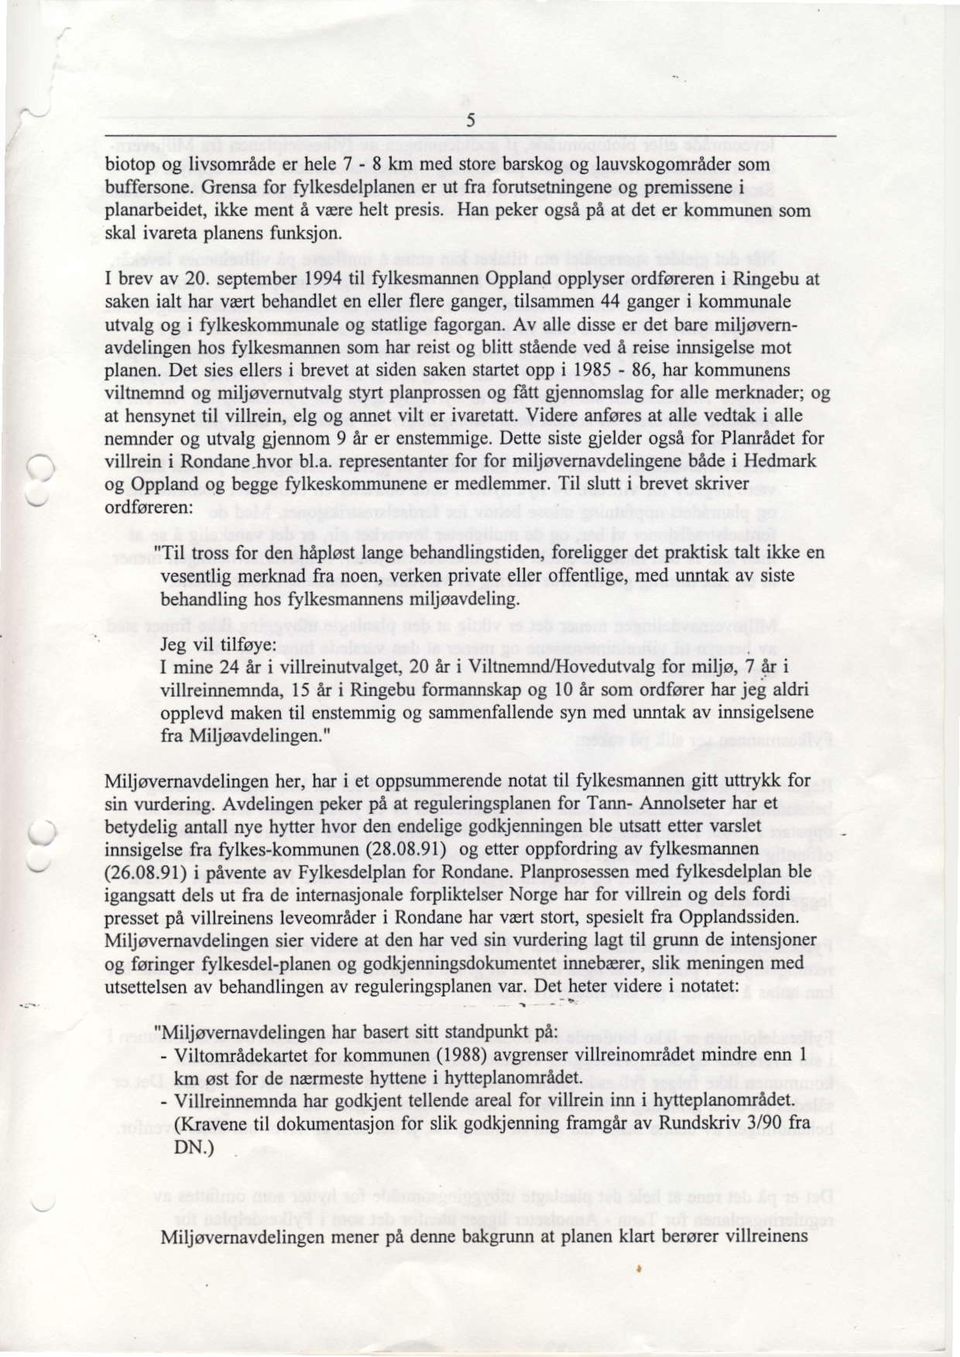 september 1994 til rylkesmamen Oppland opplyser ordforeren i Ringebu at saken ialt har v@rt behandlet en eller flere ganger, tilsammen 44 ganger i kommunale utvalg og i Slkeskommunale og srallige